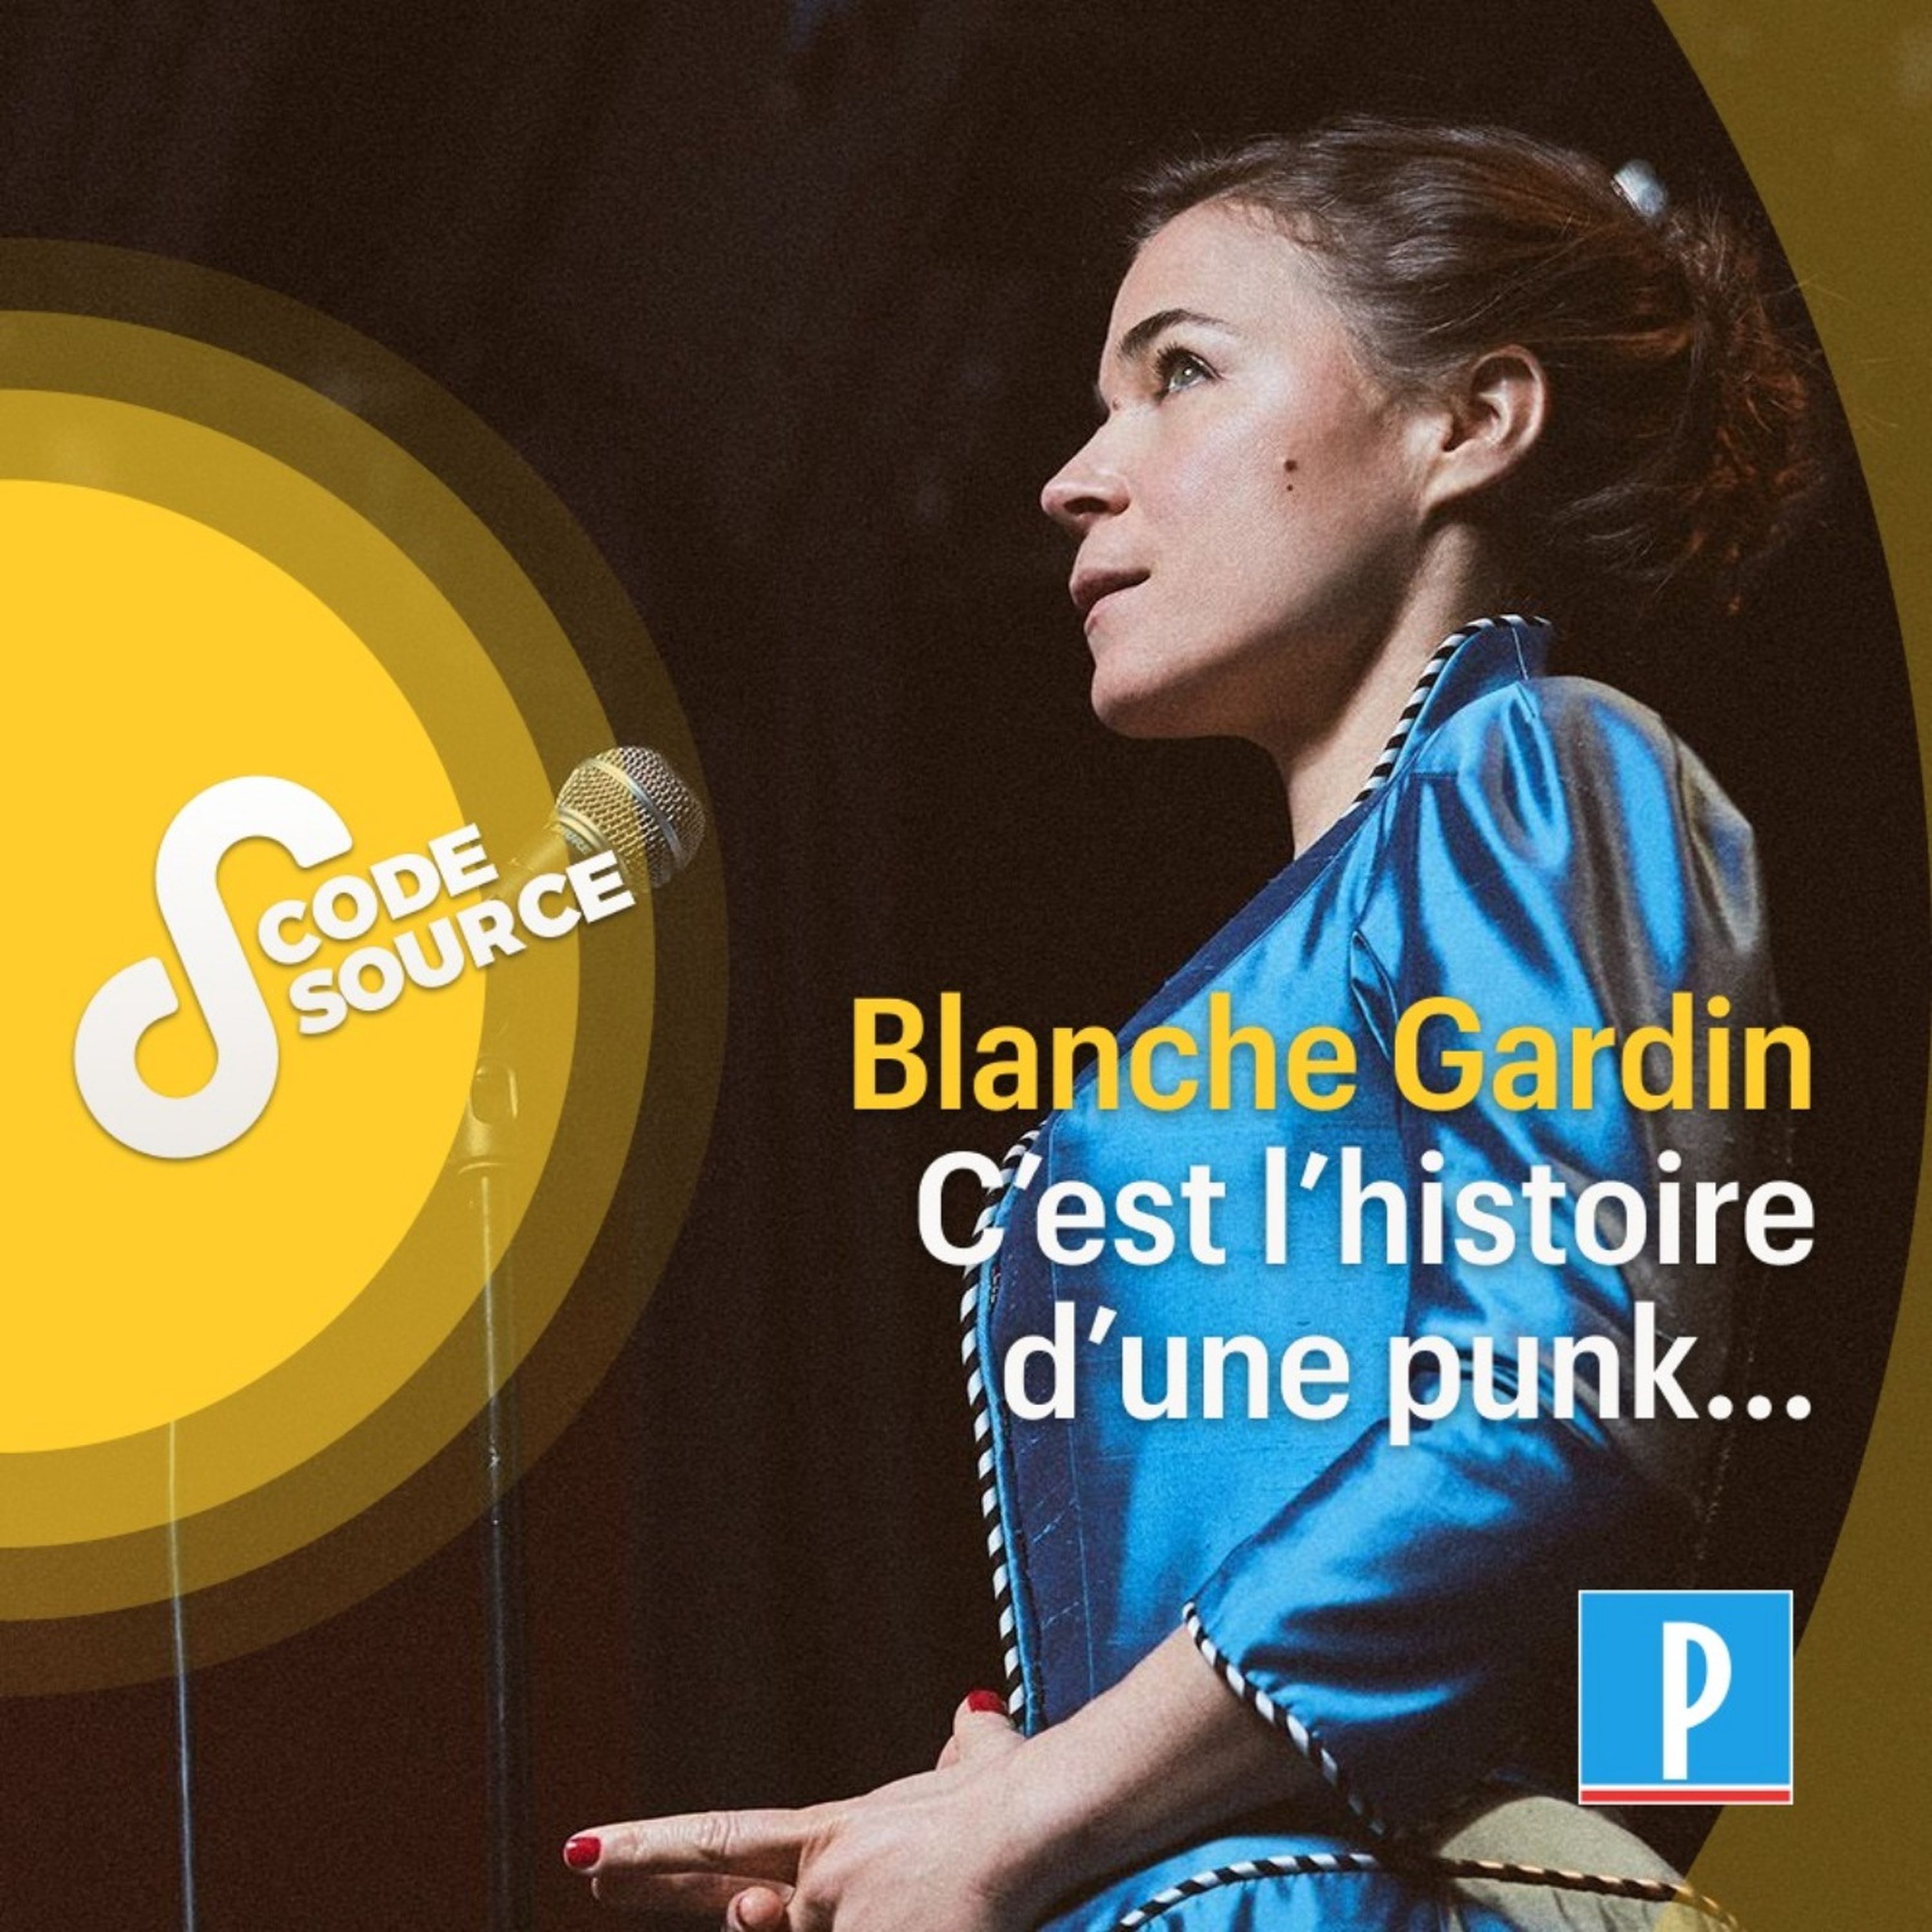 Blanche Gardin, c’est l’histoire d’une punk…